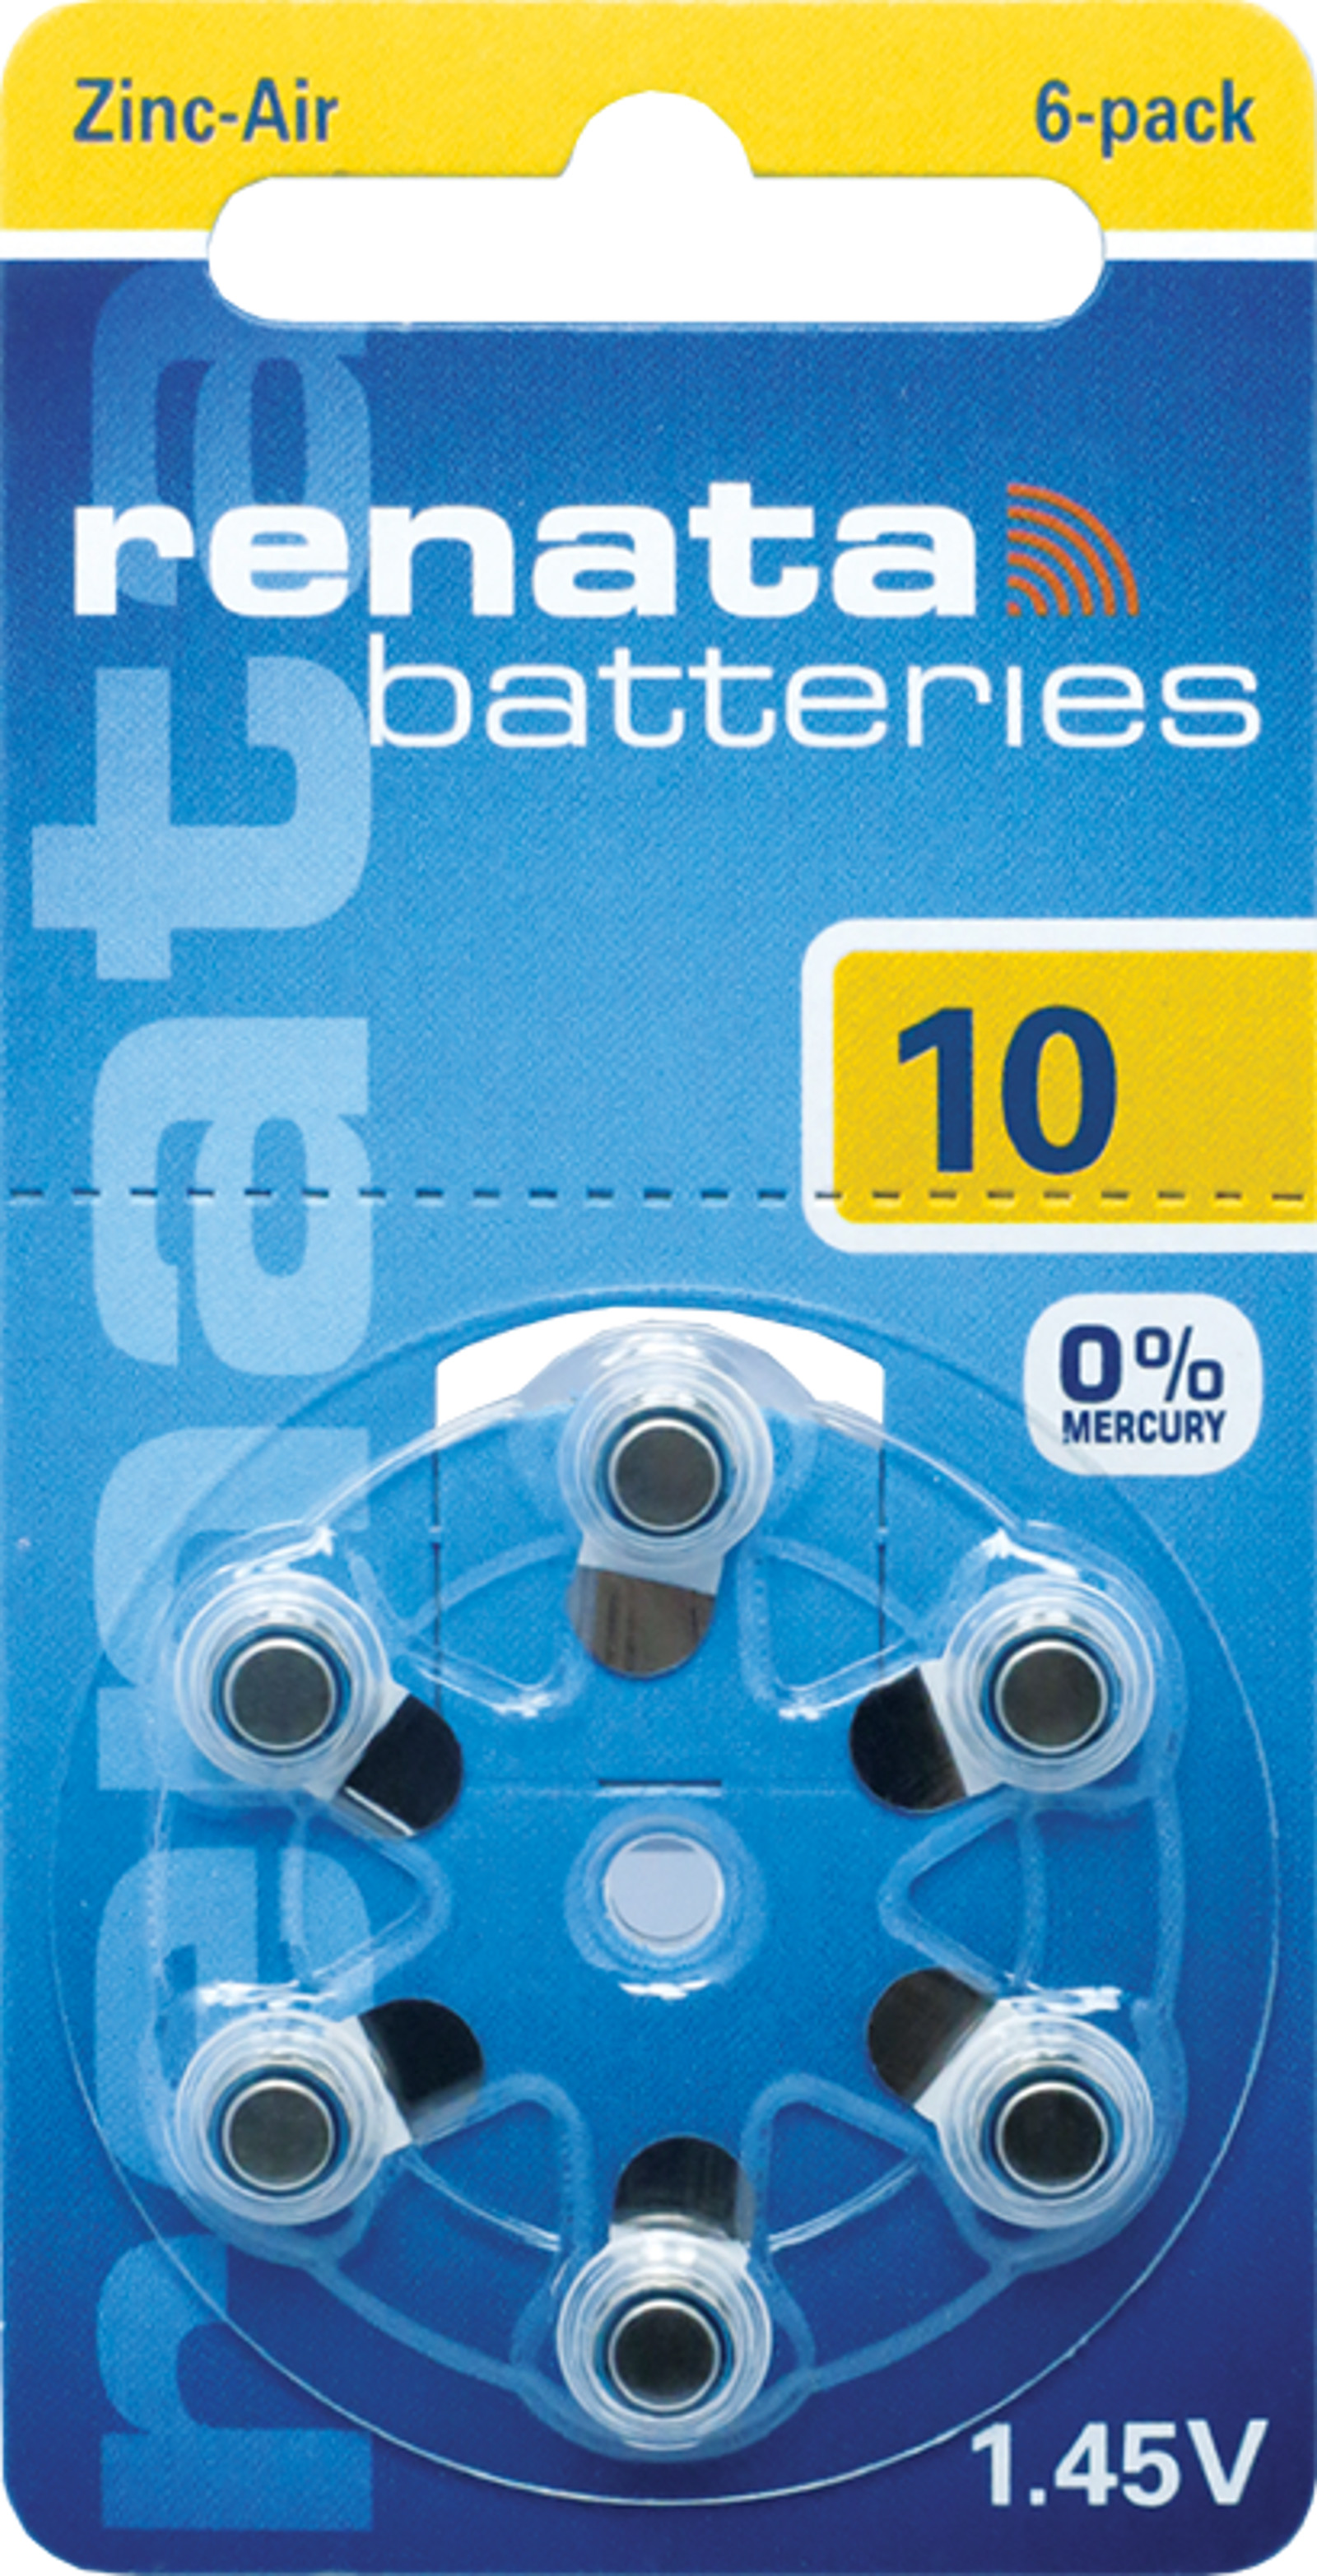 Renata Batterie 390 Blister à 10 Stück